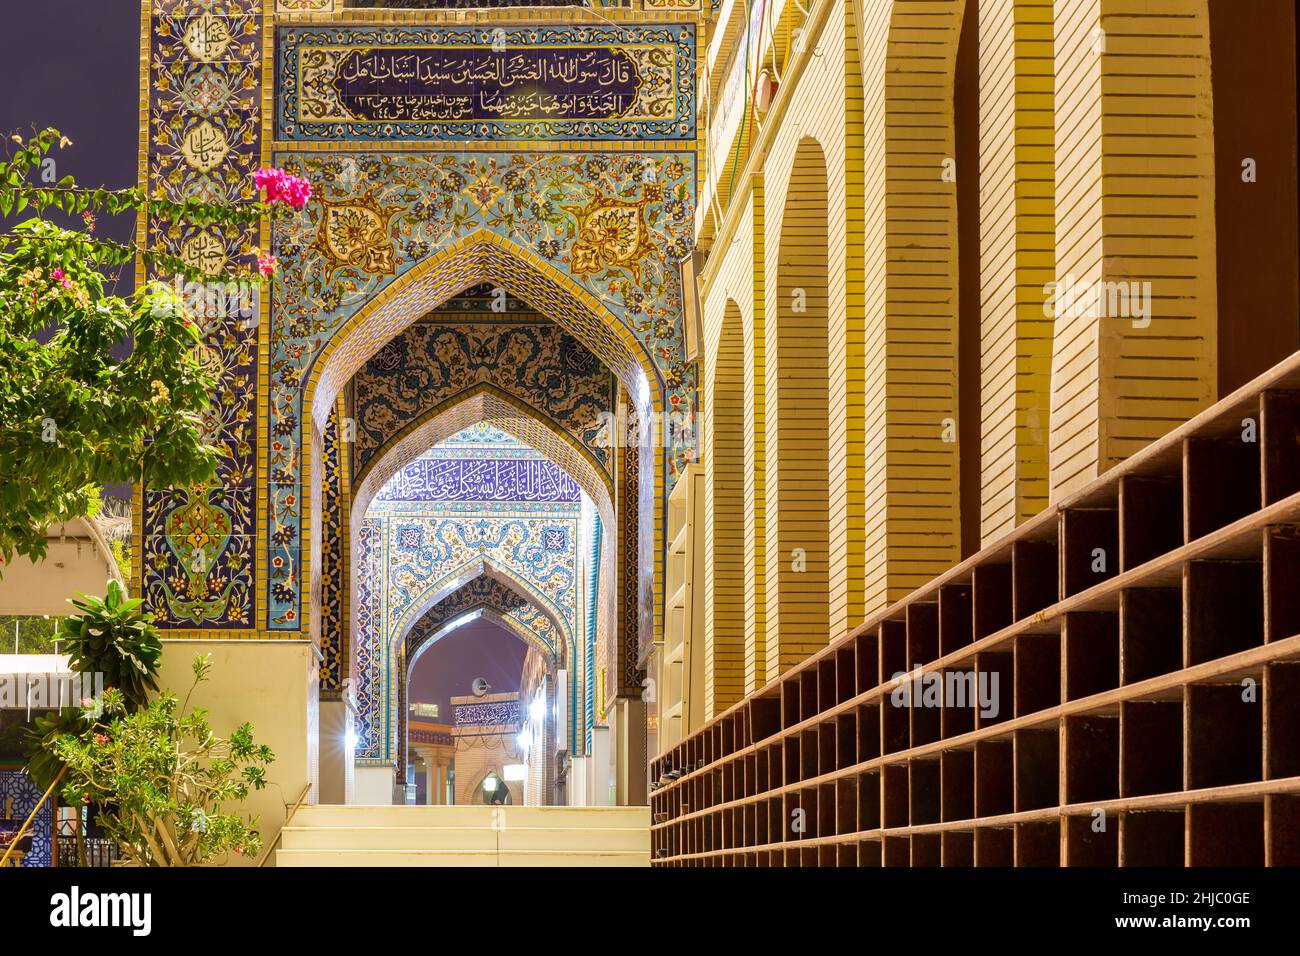 Dubai, VAE, 24.09.21. Die iranische Moschee (Imam Hussein Moschee) in Dubai, Eingangshalle mit bunten Fliesen Fassade, Beispiel der persischen Architektur. Stockfoto